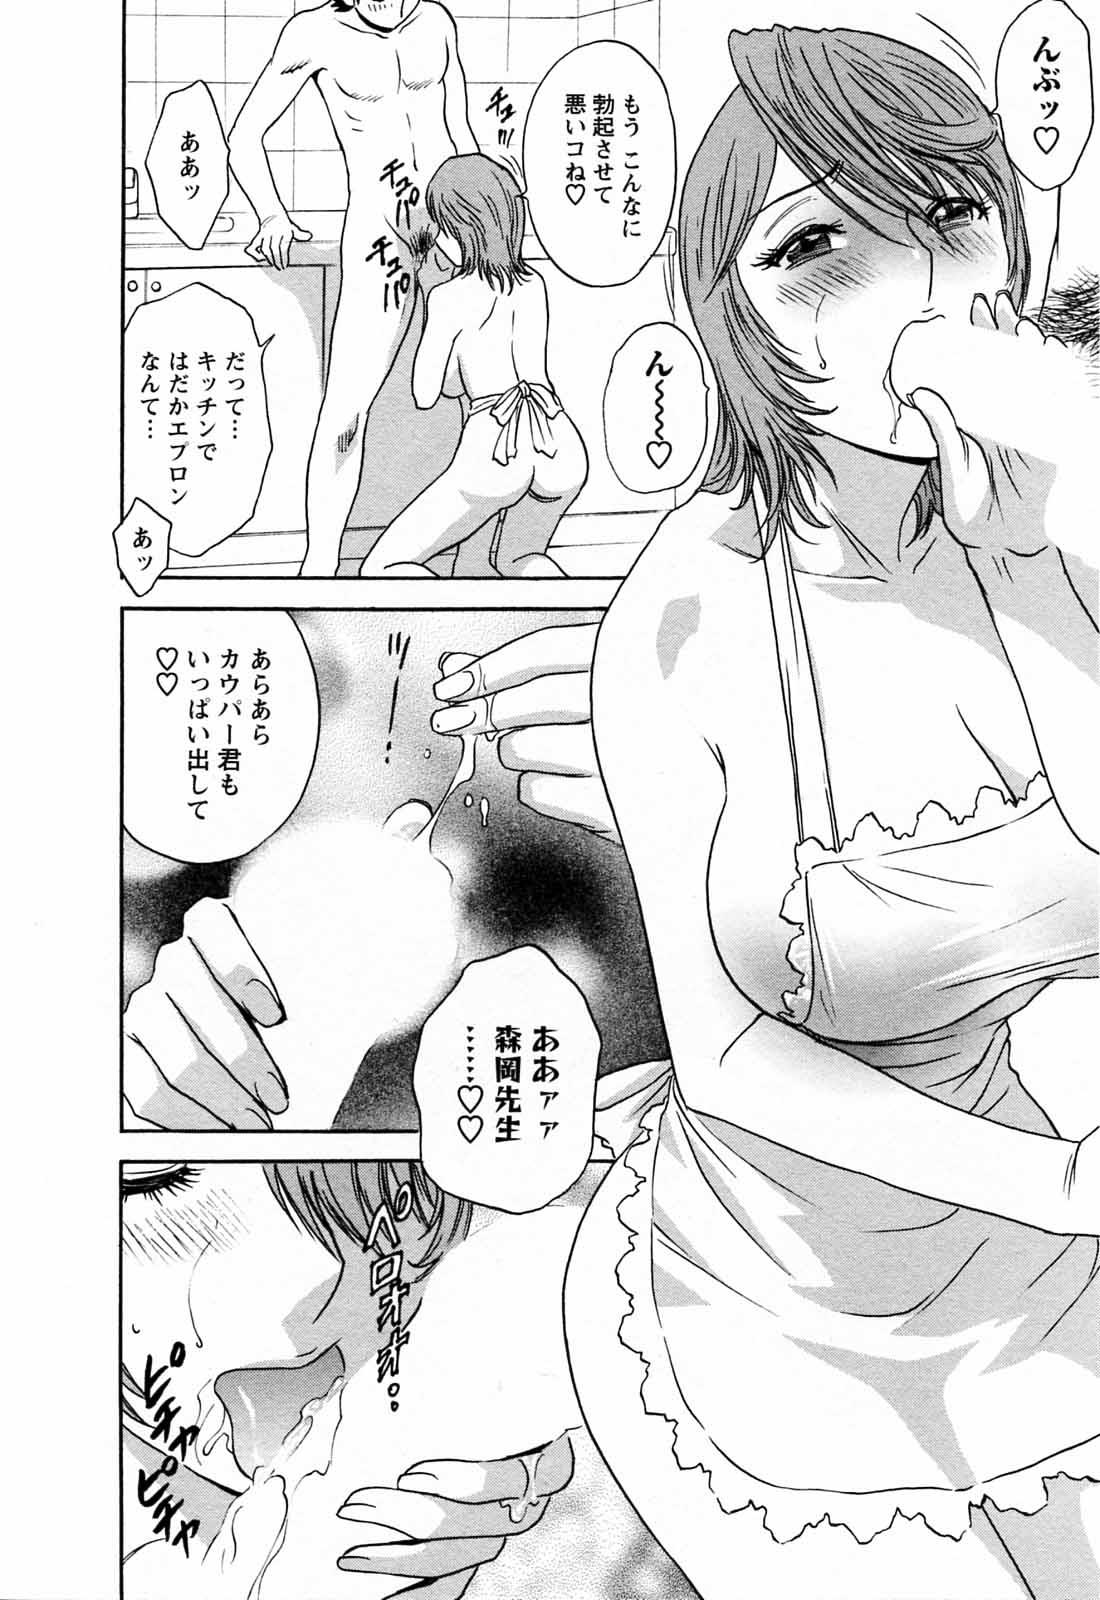 [Hidemaru] Mo-Retsu! Boin Sensei (Boing Boing Teacher) Vol.5 39